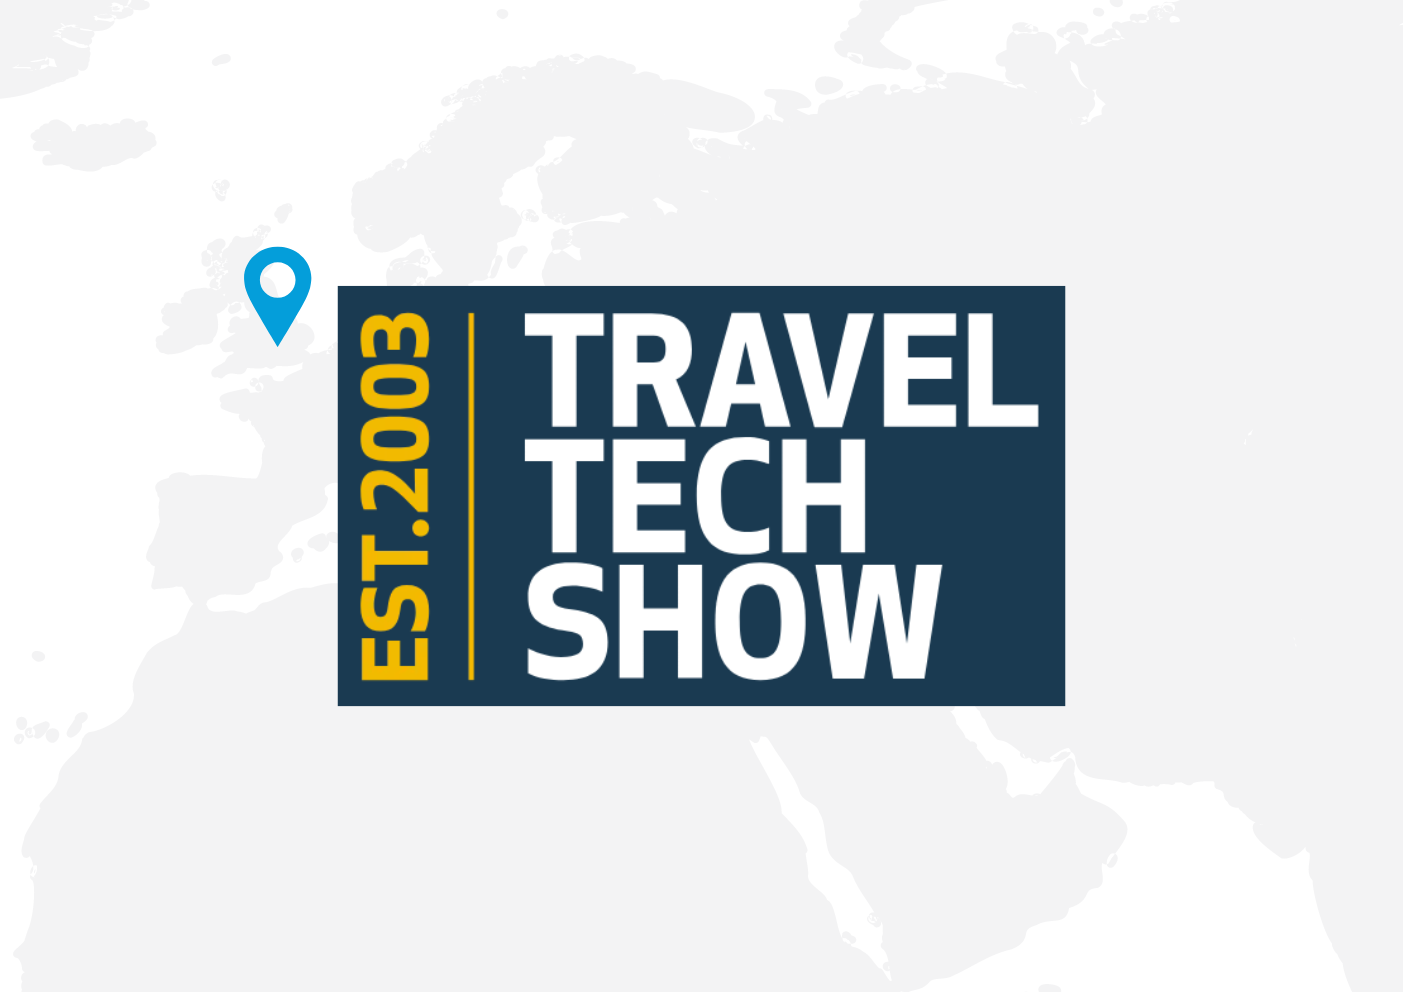 Travel-tech-show-w-bg